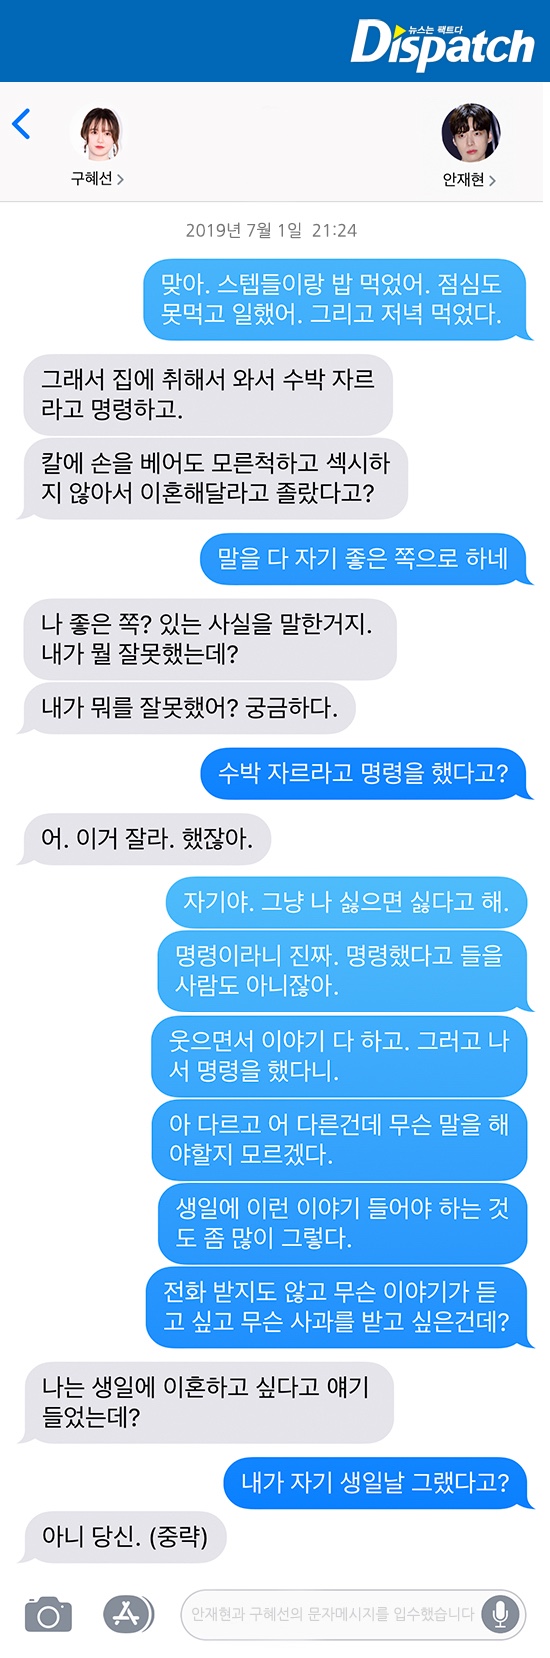 오연서 김슬기 입장, 안재현구혜선 디스패치 2년치 문자 공개 오연서 김슬기 애먼 불똥